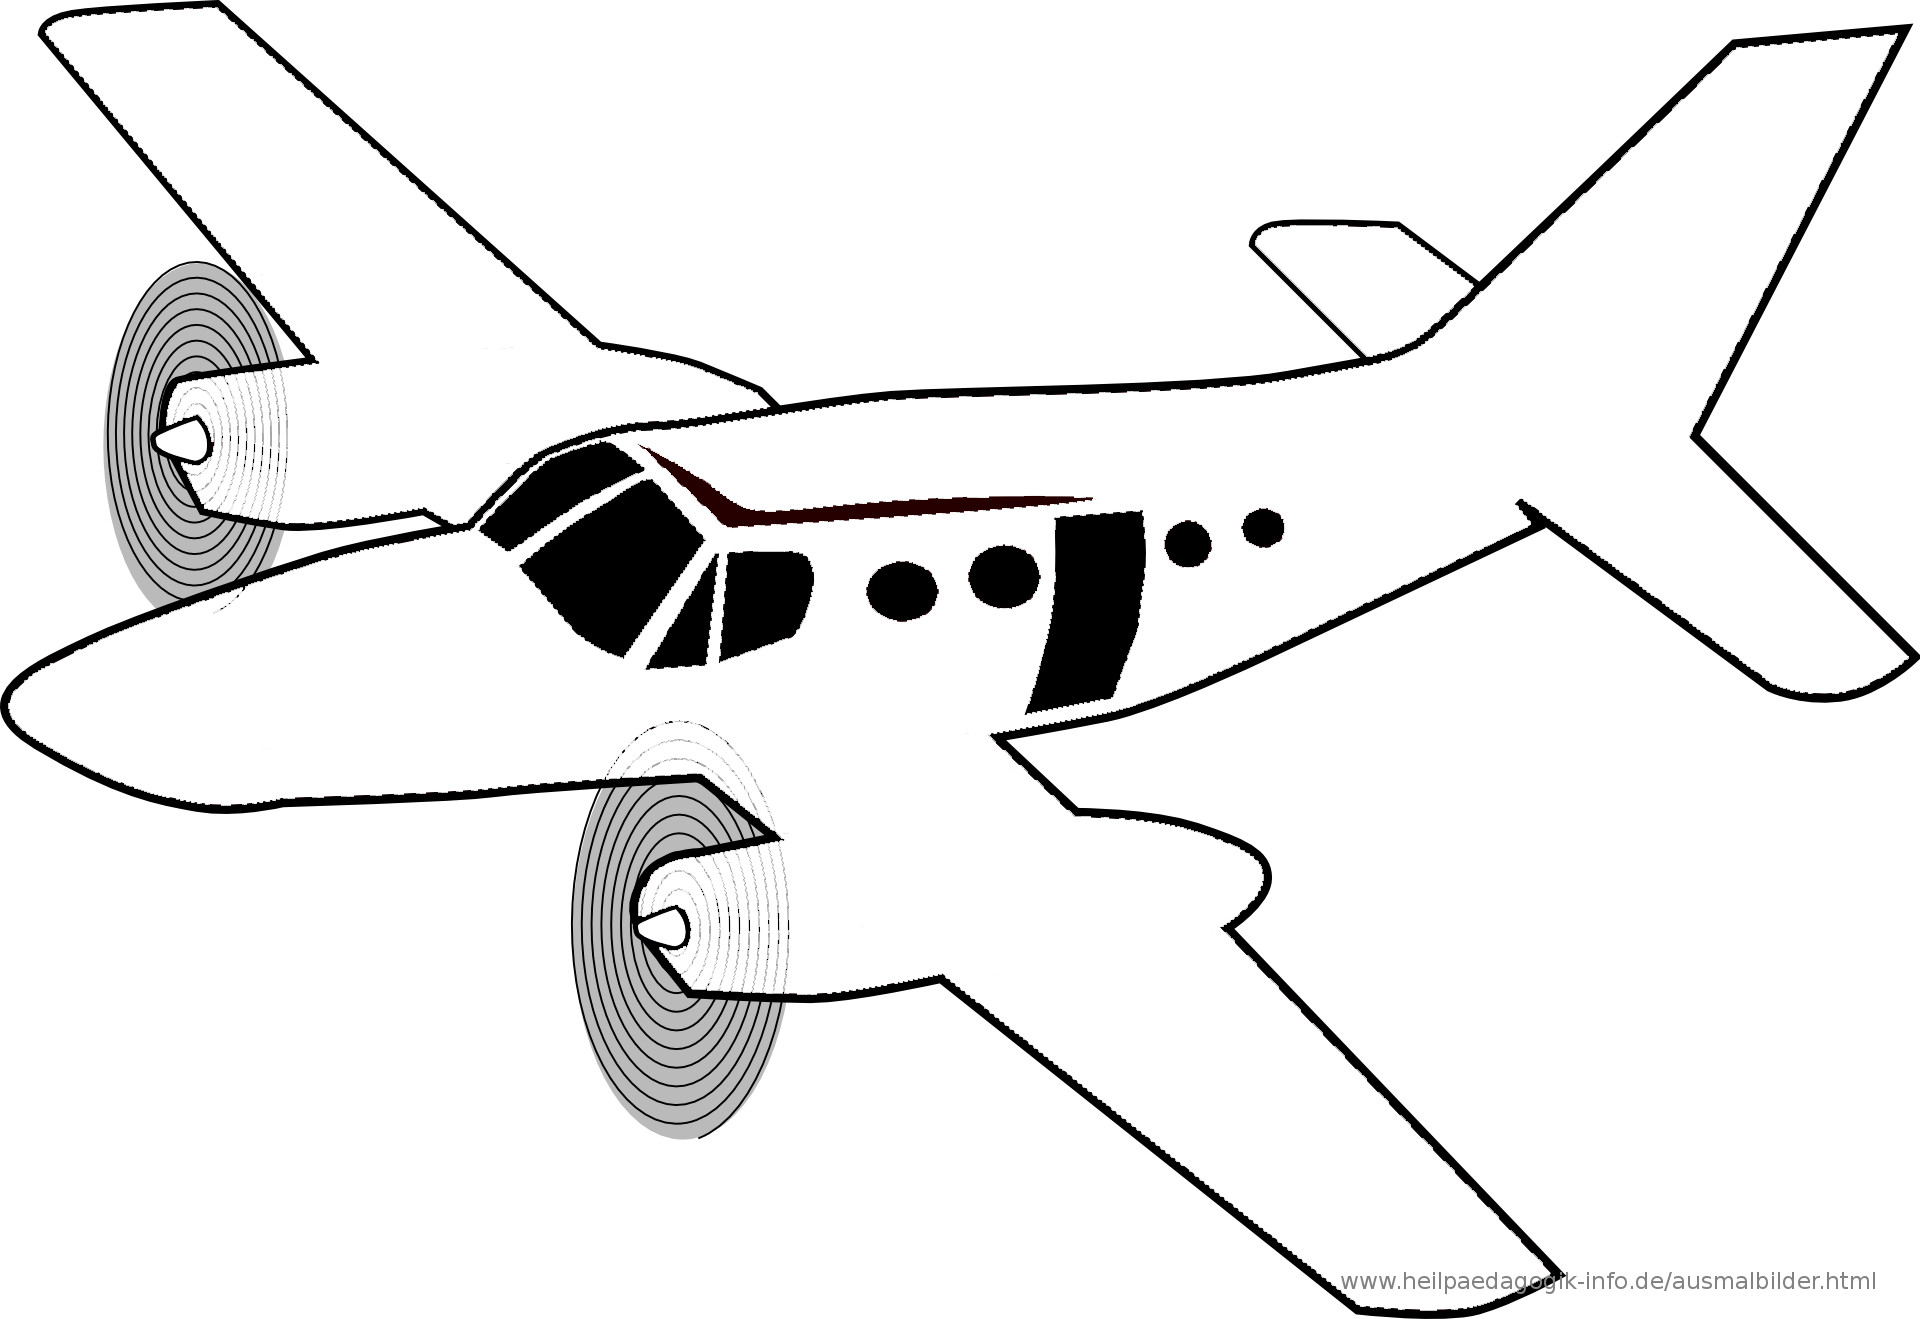 Ausmalbilder Flugzeug
 Ausmalbilder Flugzeuge